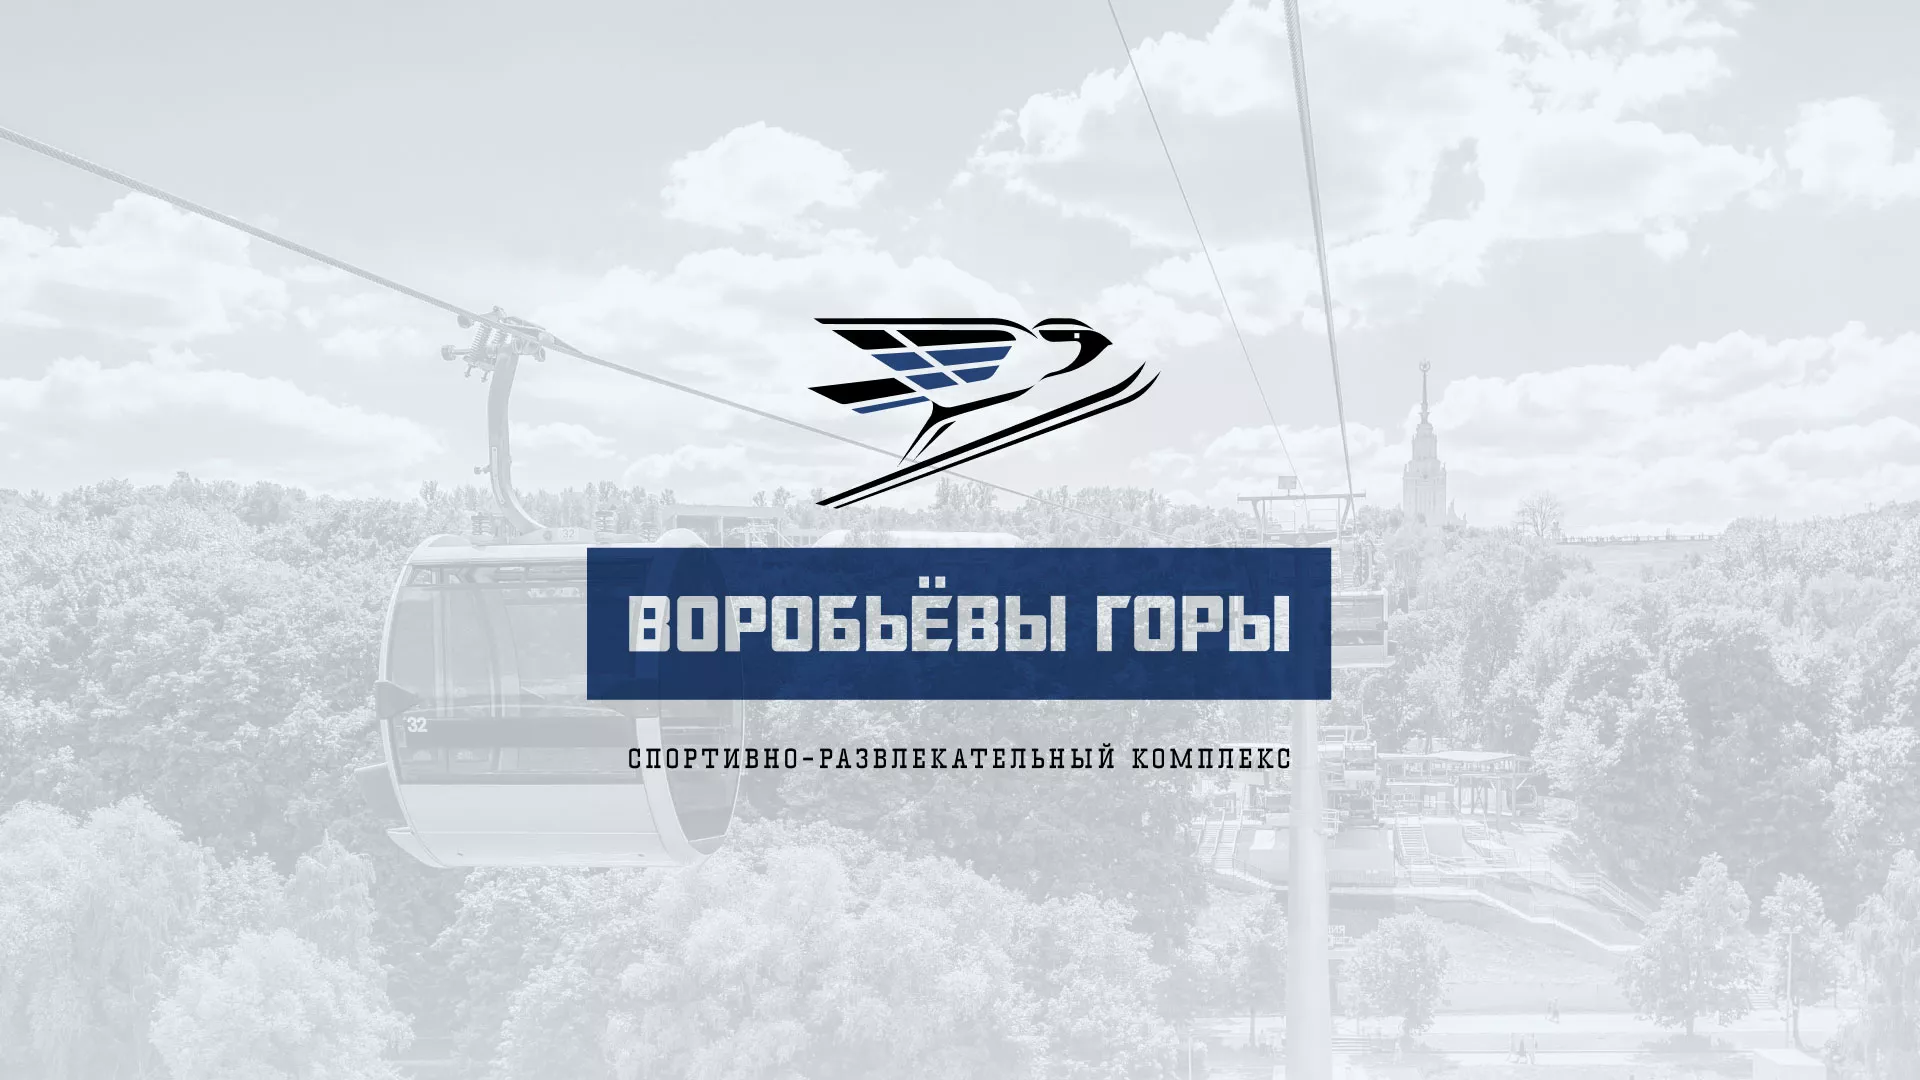 Разработка сайта в Подольске для спортивно-развлекательного комплекса «Воробьёвы горы»